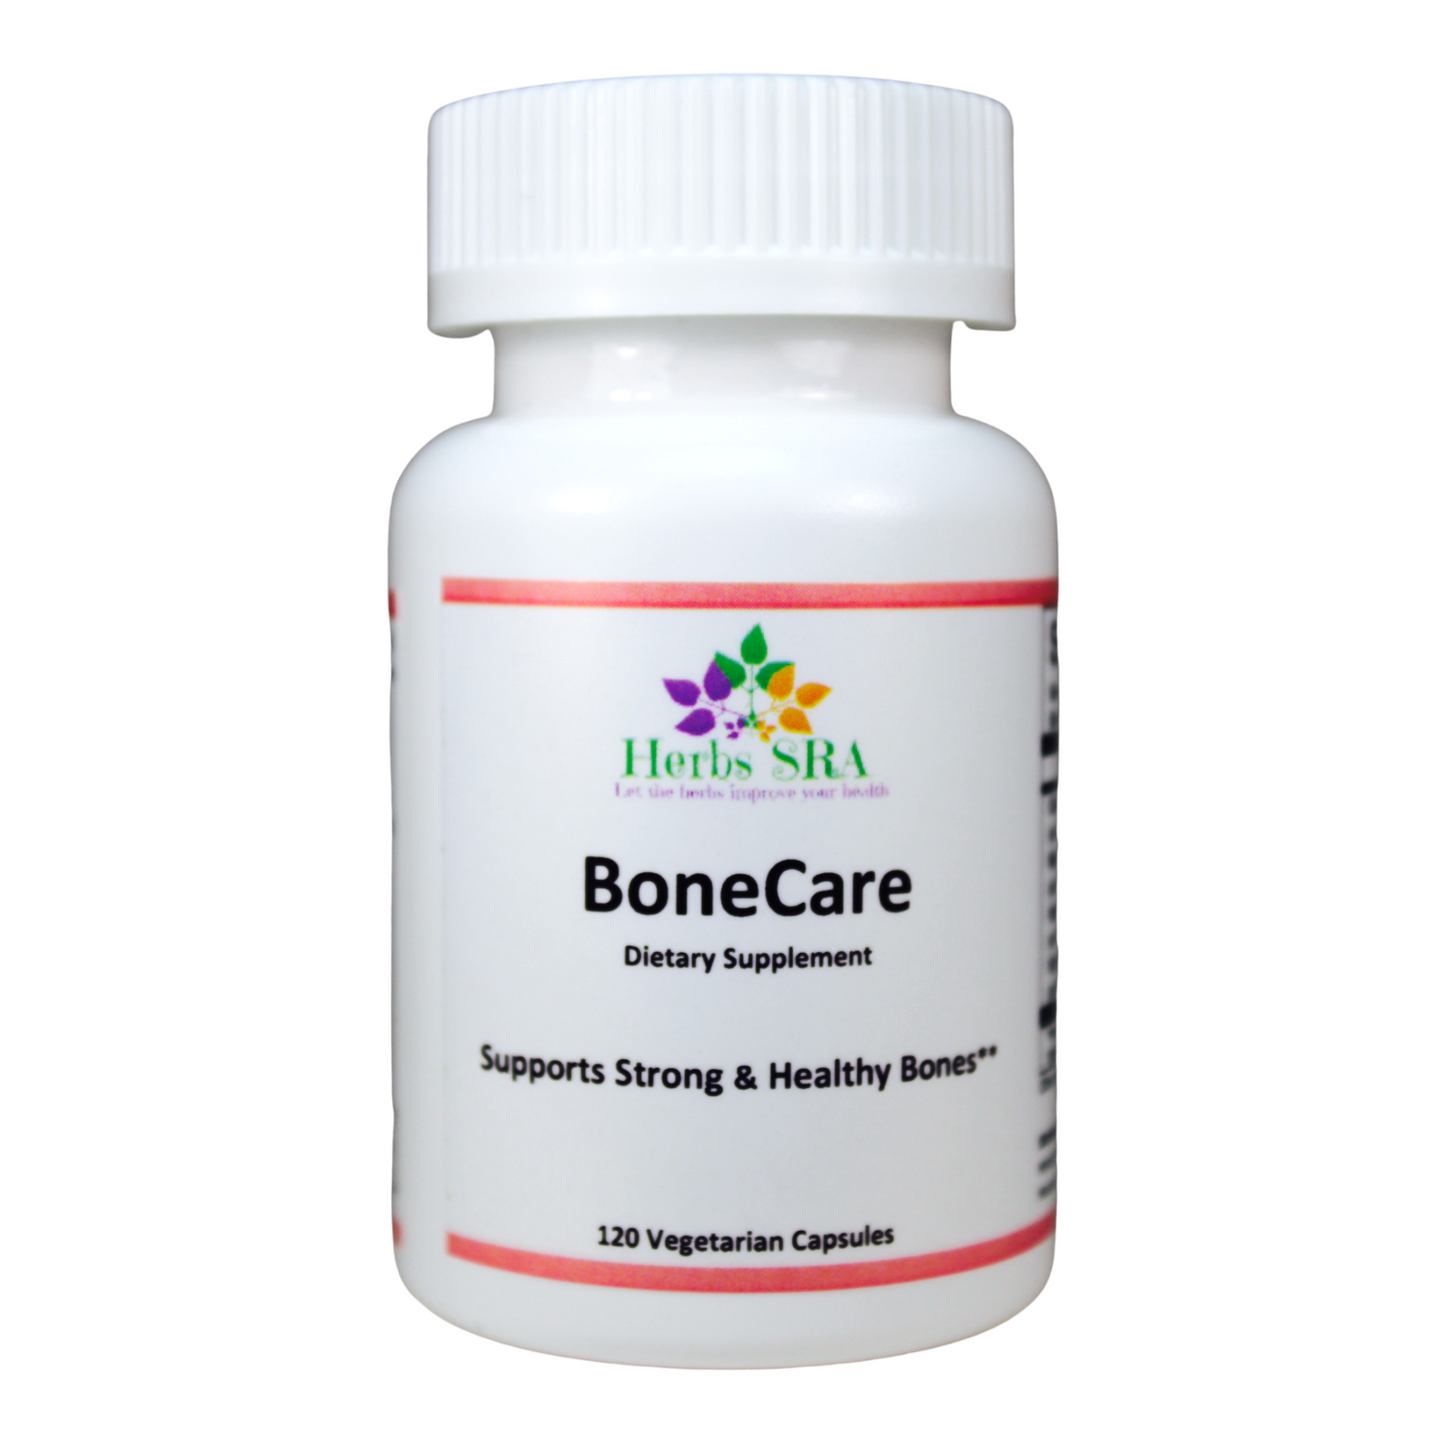 Bone Care